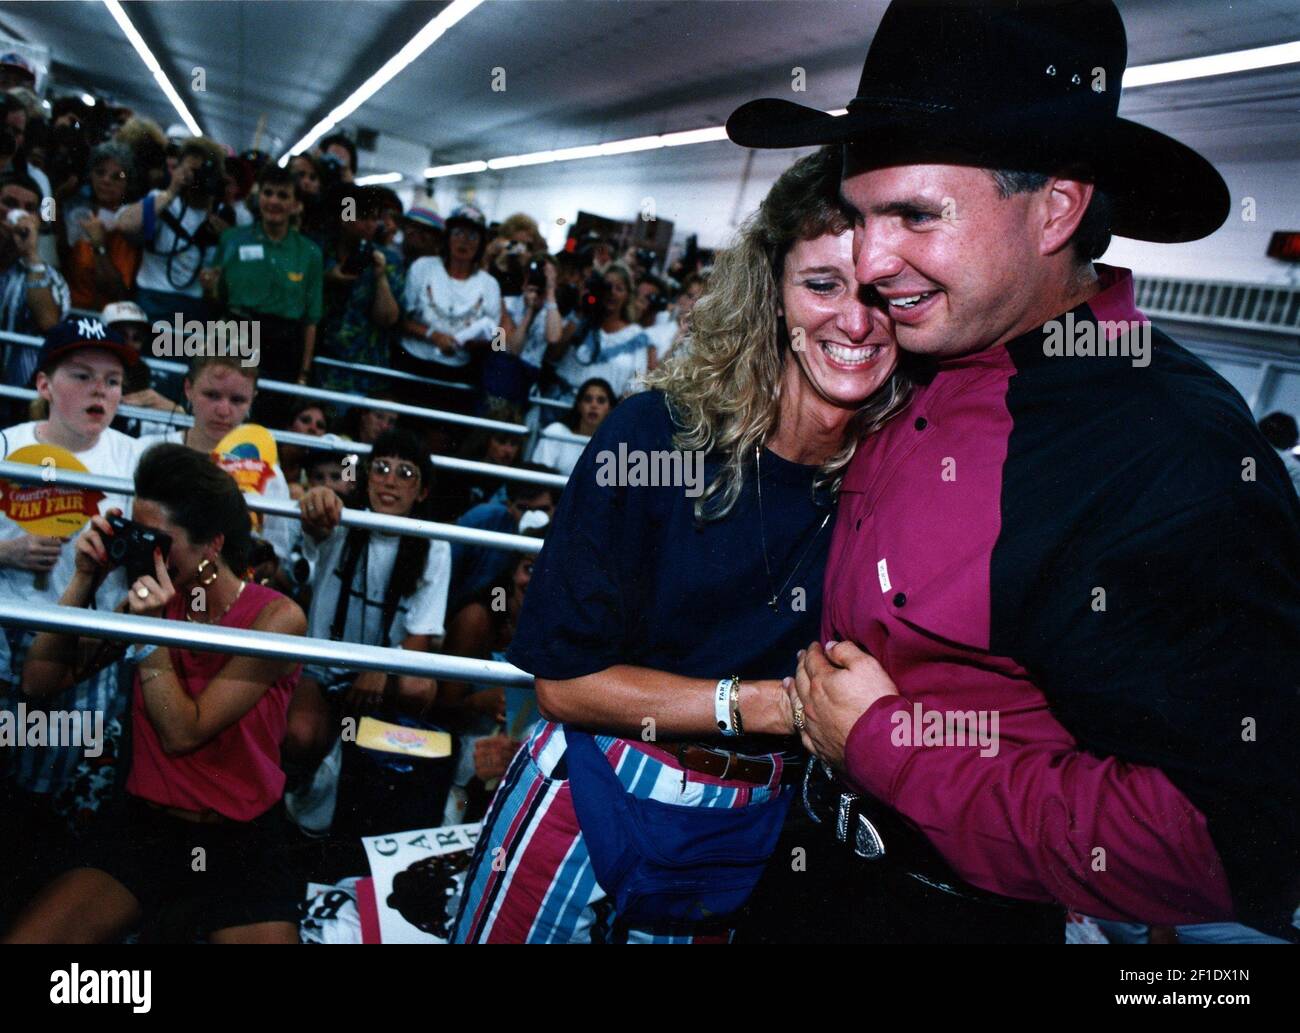 10 de junio de 1993; Nashville, TN, EE.UU.; North Carolinian Iris Wasen lugar recibe un gran abrazo de Garth Brooks en su stand de la Feria de fans en el recinto ferial del estado mientras cientos de fans esperan su turno detrás de él. Crédito obligatorio: El Tennessean a través de EE.UU. HOY RED / Sipa EE.UU. Foto de stock